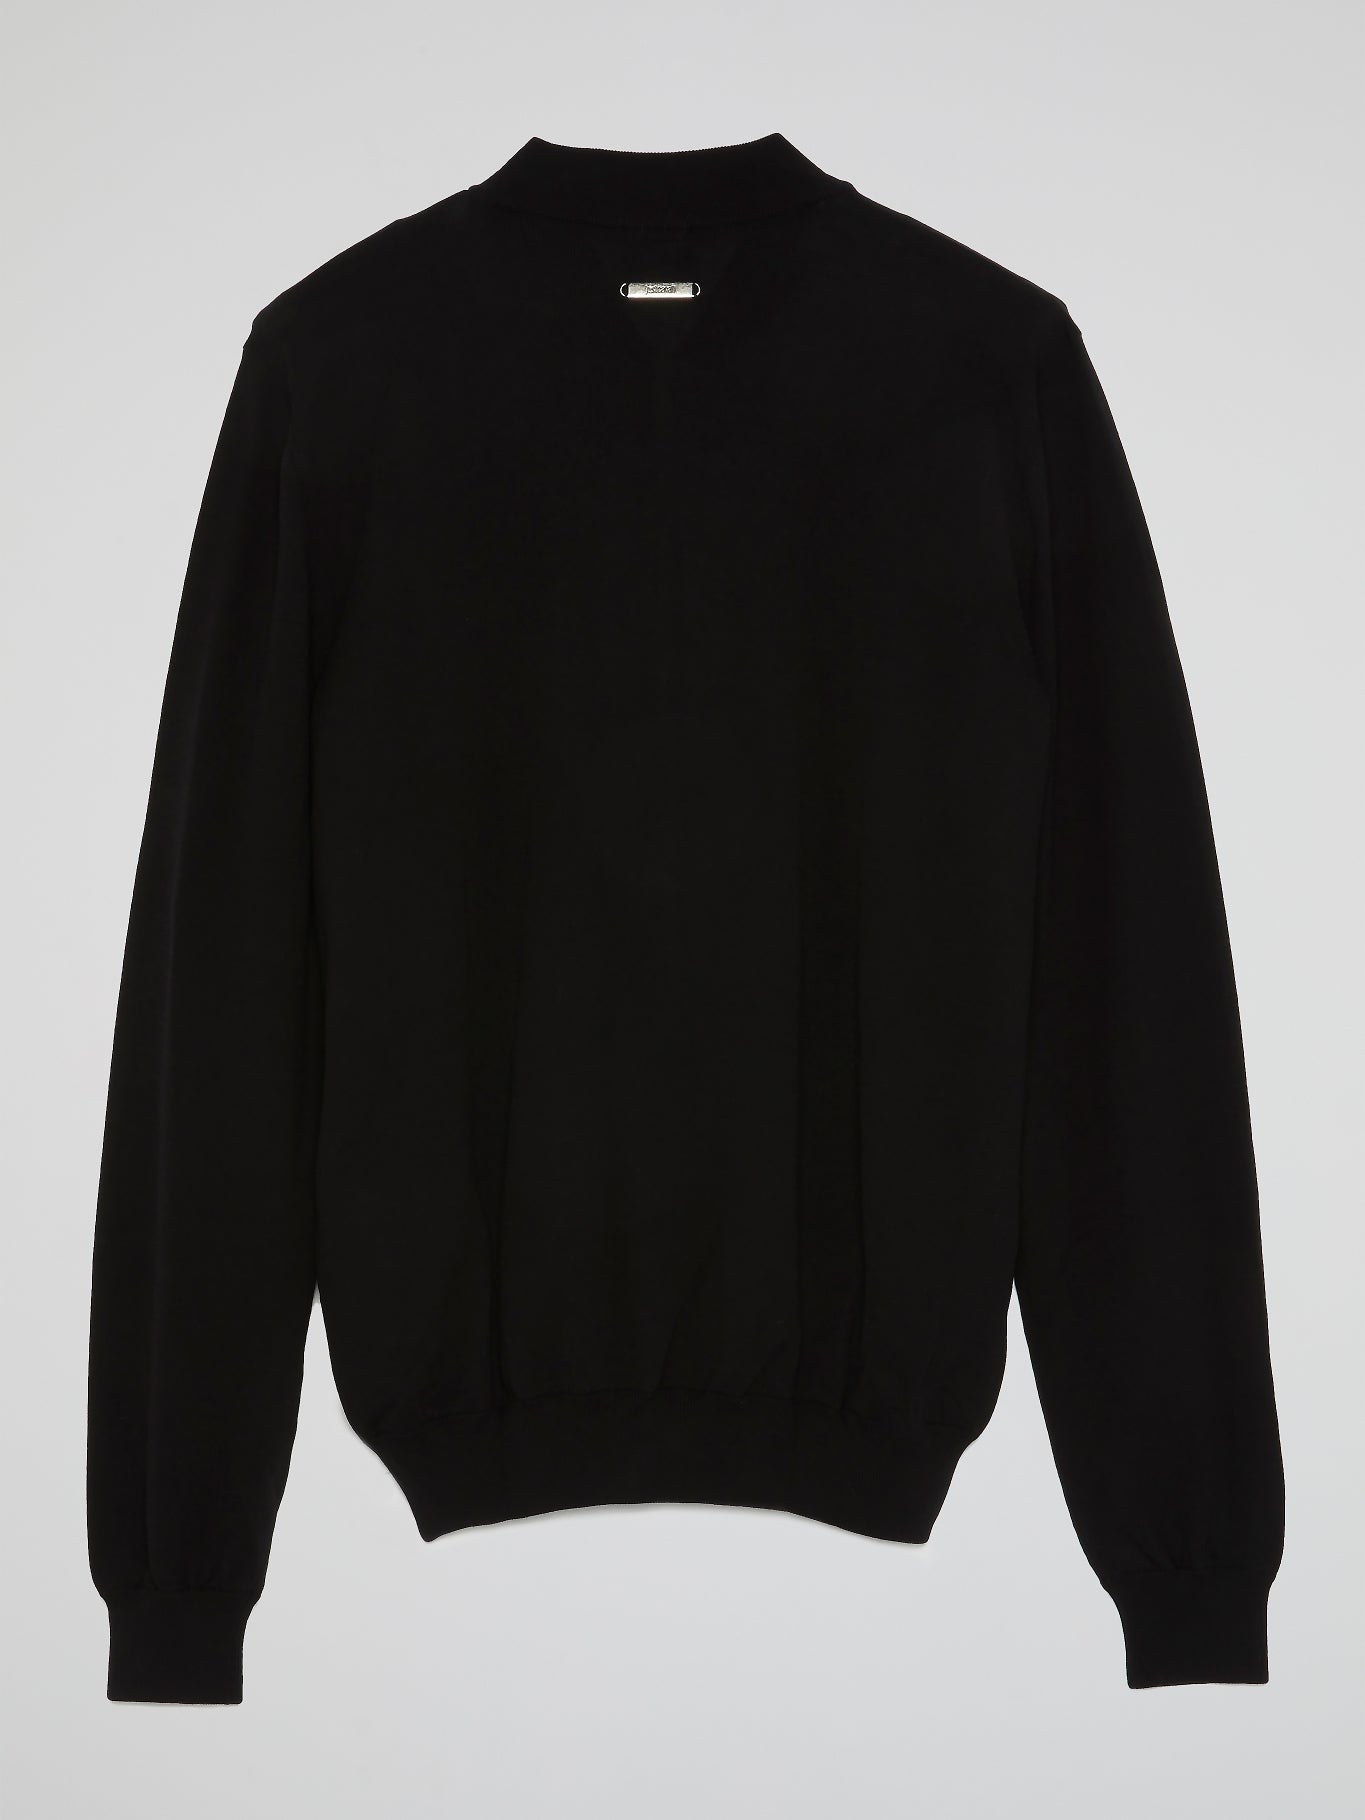 Black Printed Zip Up Sweatshirt